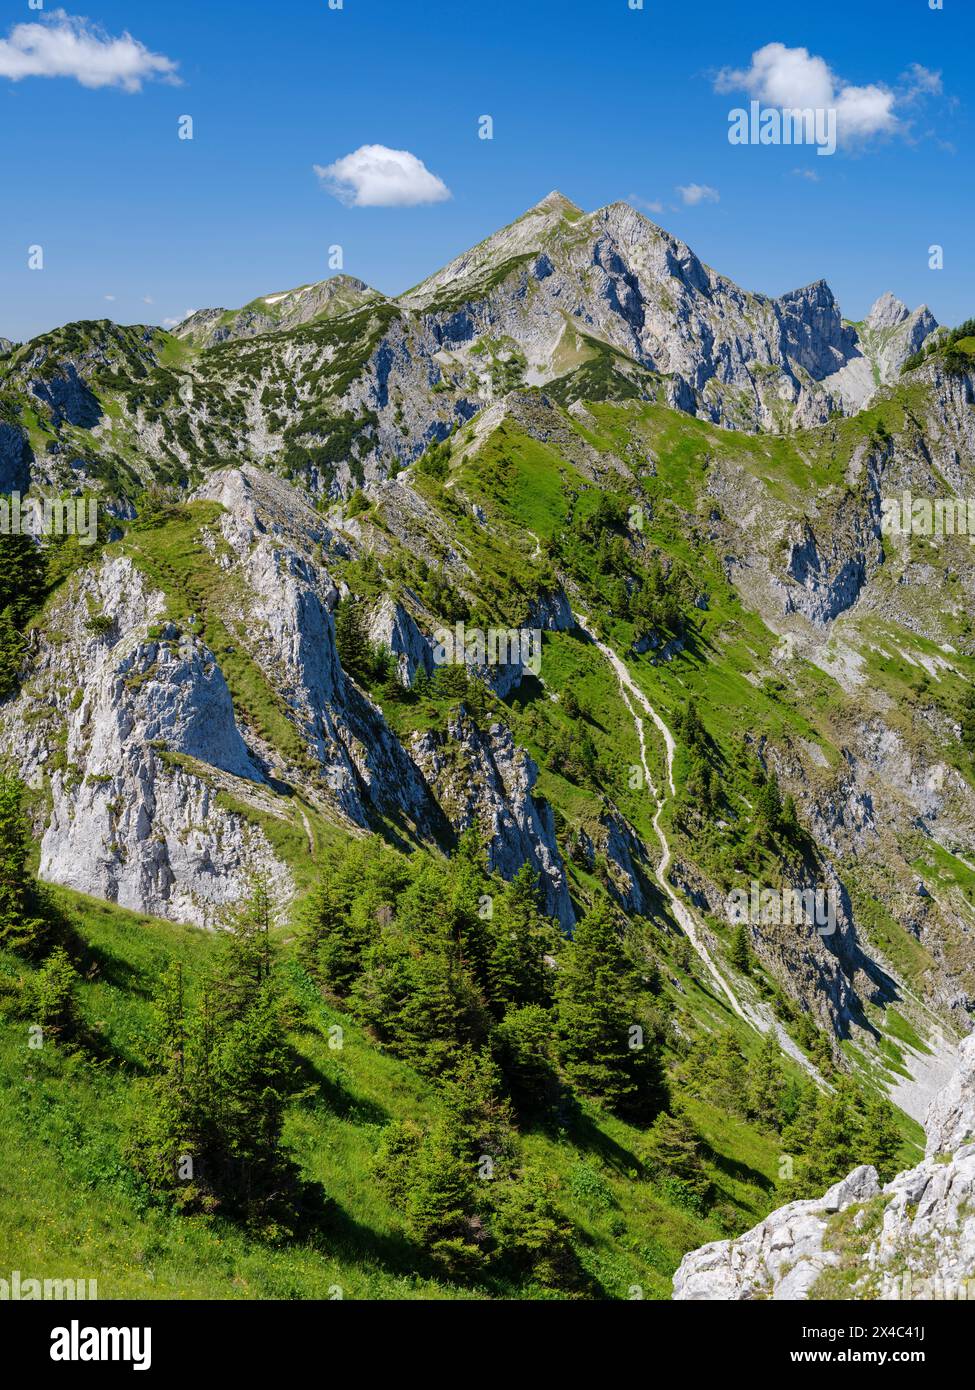 Blick in Richtung Mt. Hochplatte, Mt. Vorderscheinberg und eine Doline namens Kessel. Naturpark Ammergauer Alpen in den nördlichen Kalkalpen Oberbayerns. Stockfoto